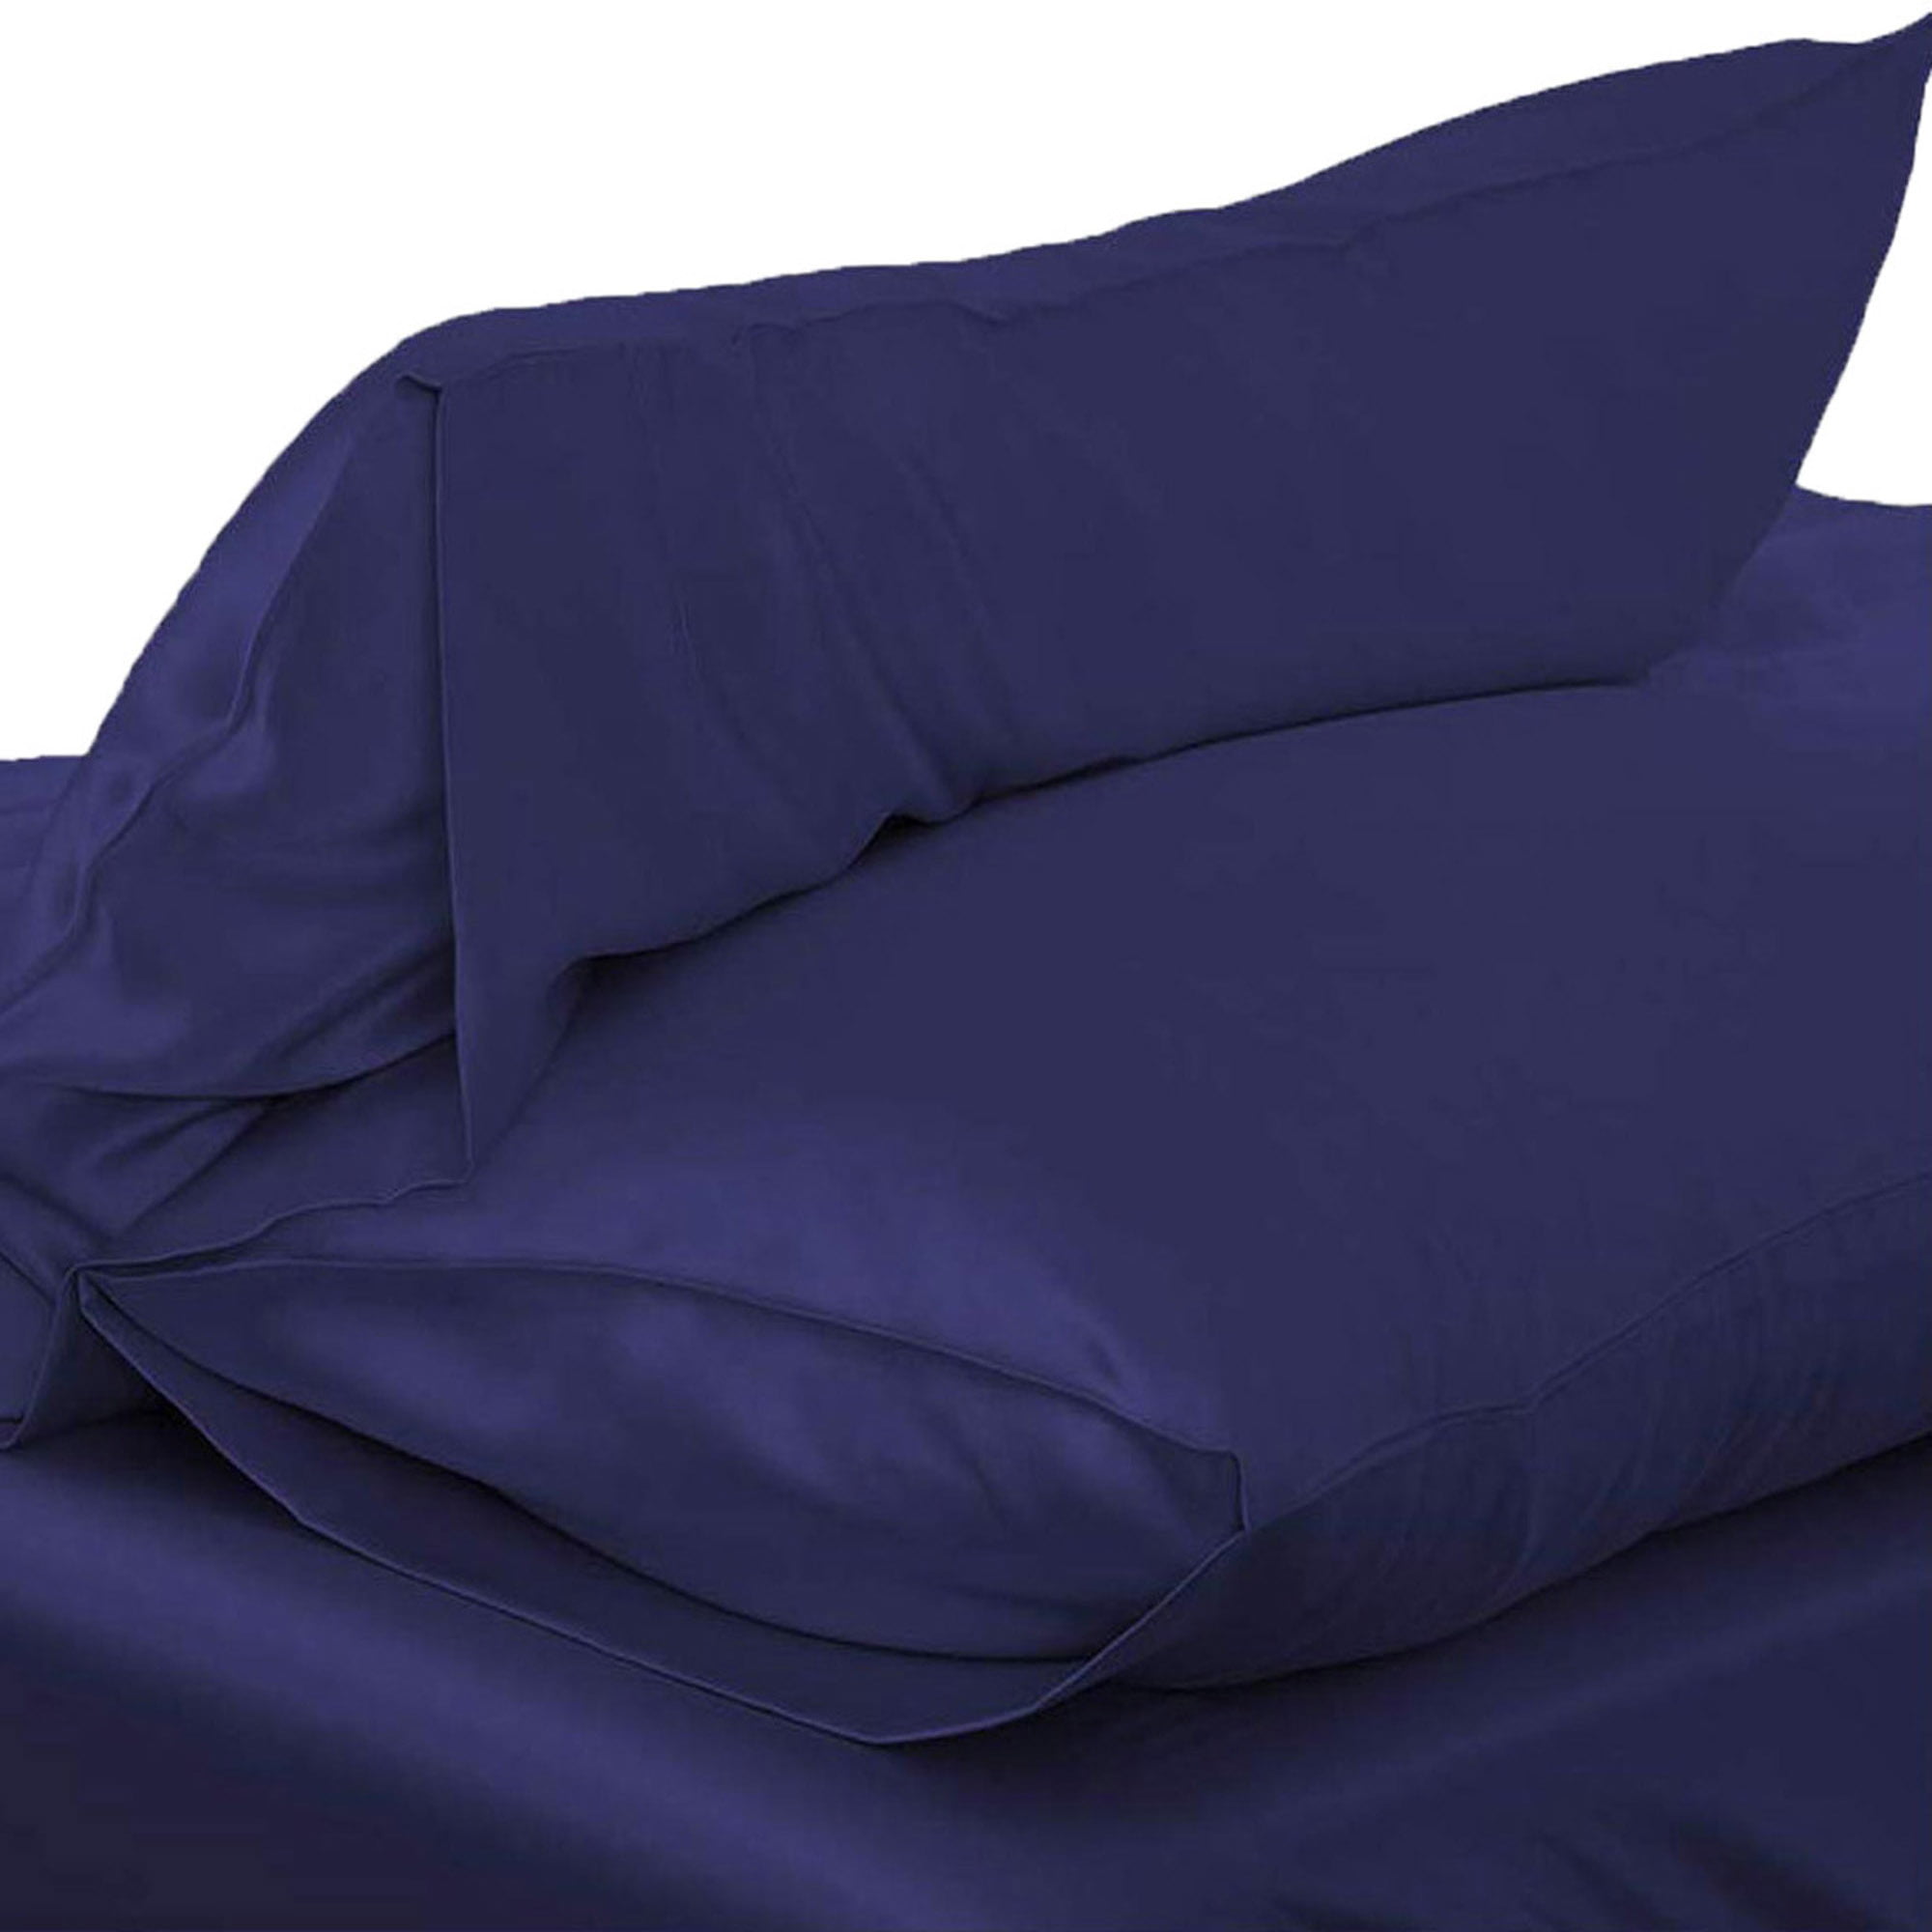 Solid Queen/Standard Silk Satin Pillow Case Bedding Pillowcase Smooth Home 2019